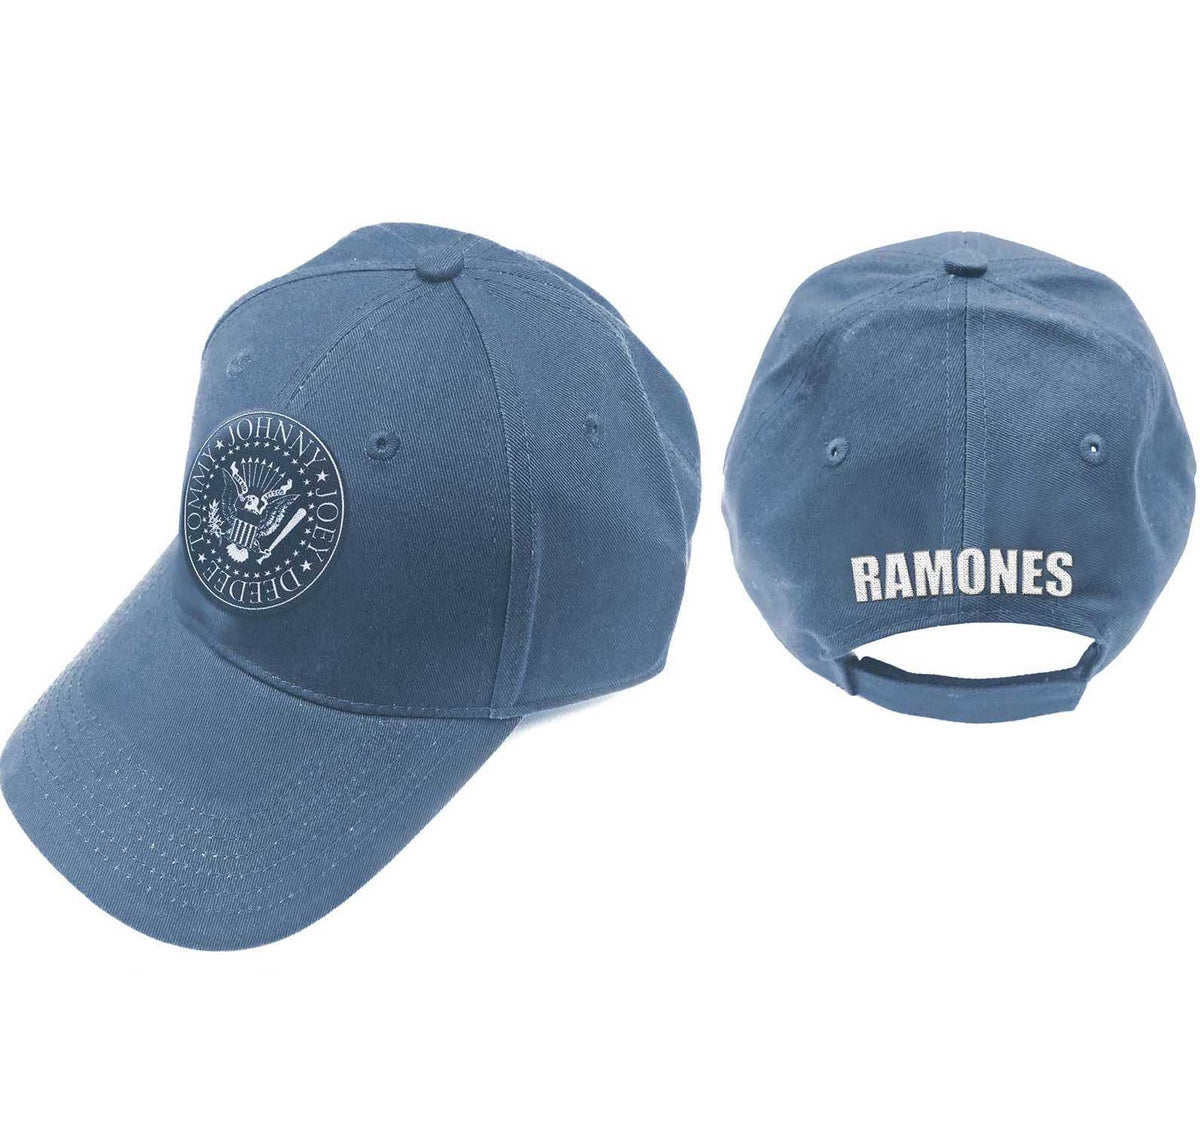 Casquette de baseball unisexe Ramones - Sceau présidentiel - Bleu denim - Produit officiel